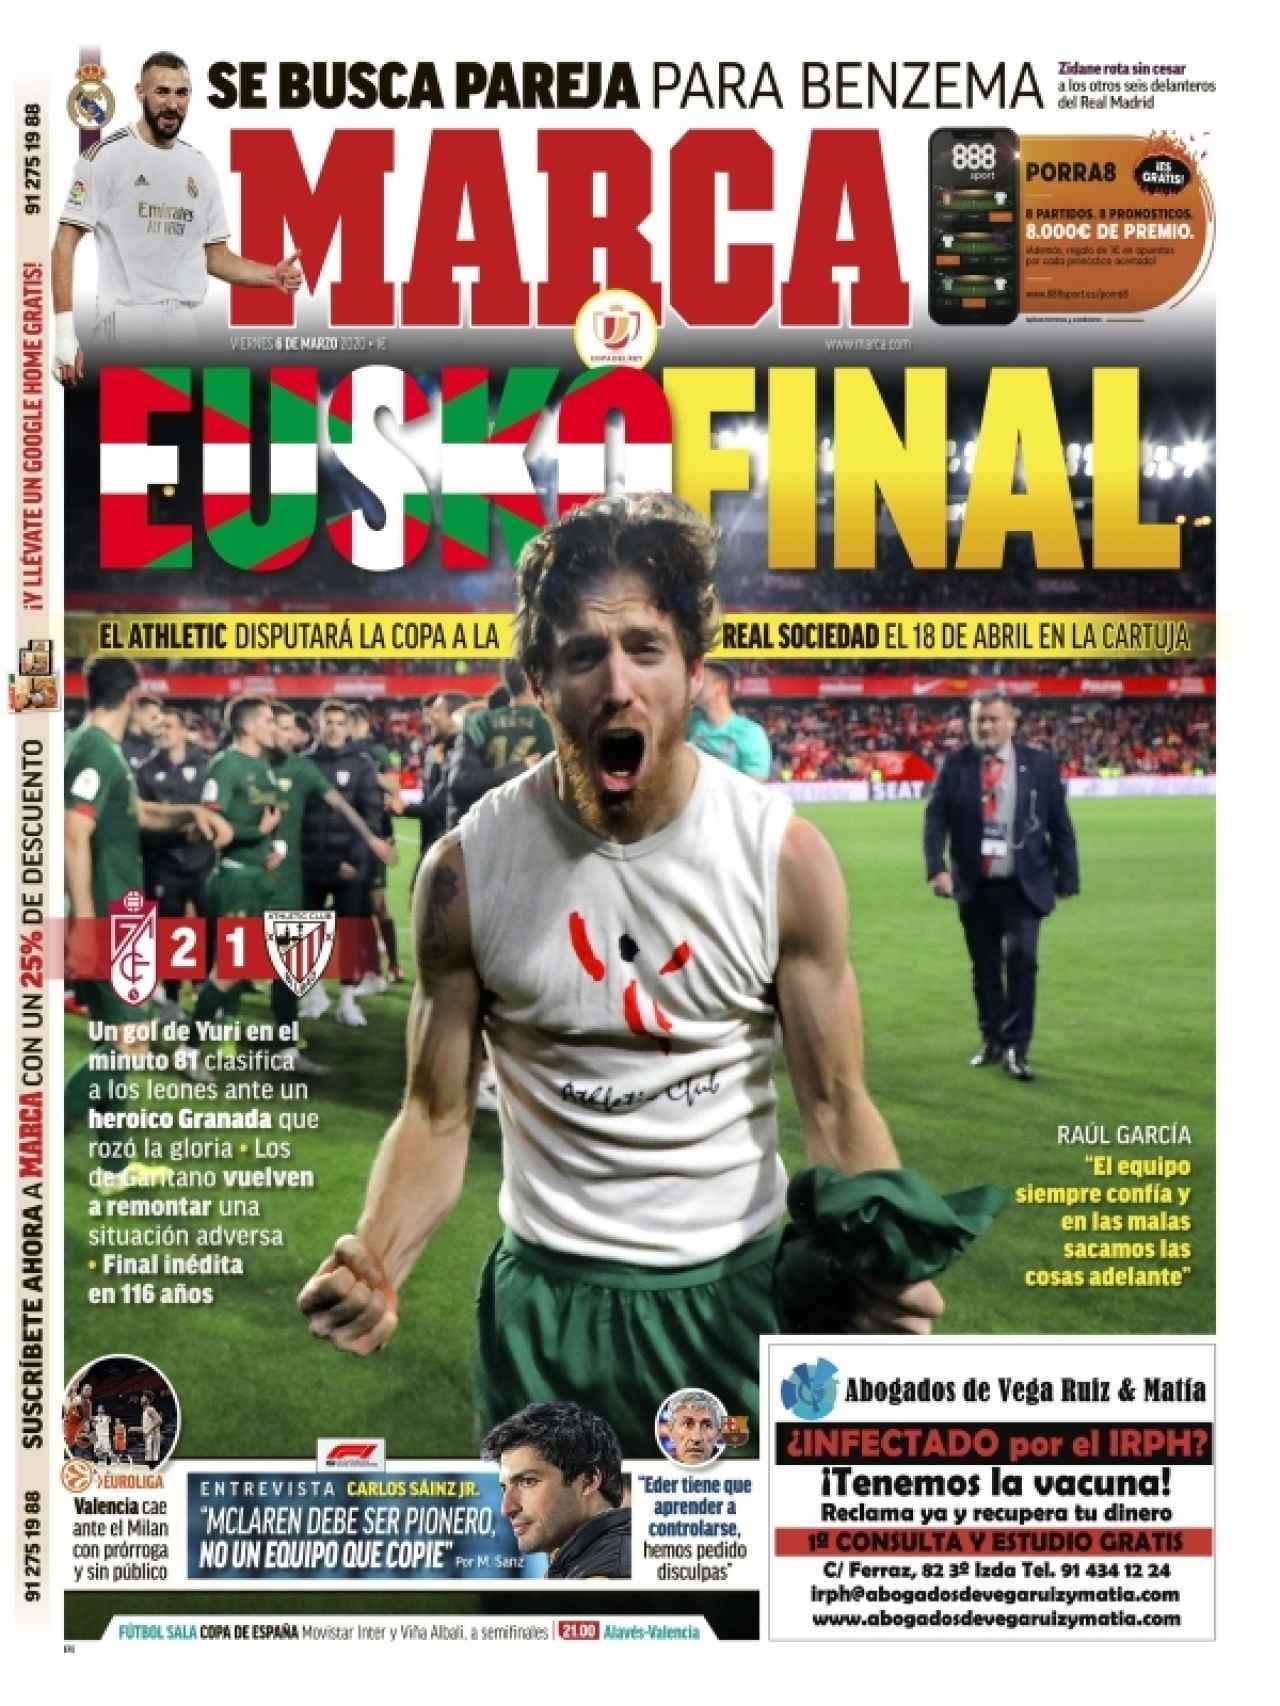 La portada del diario MARCA (06/03/2020)